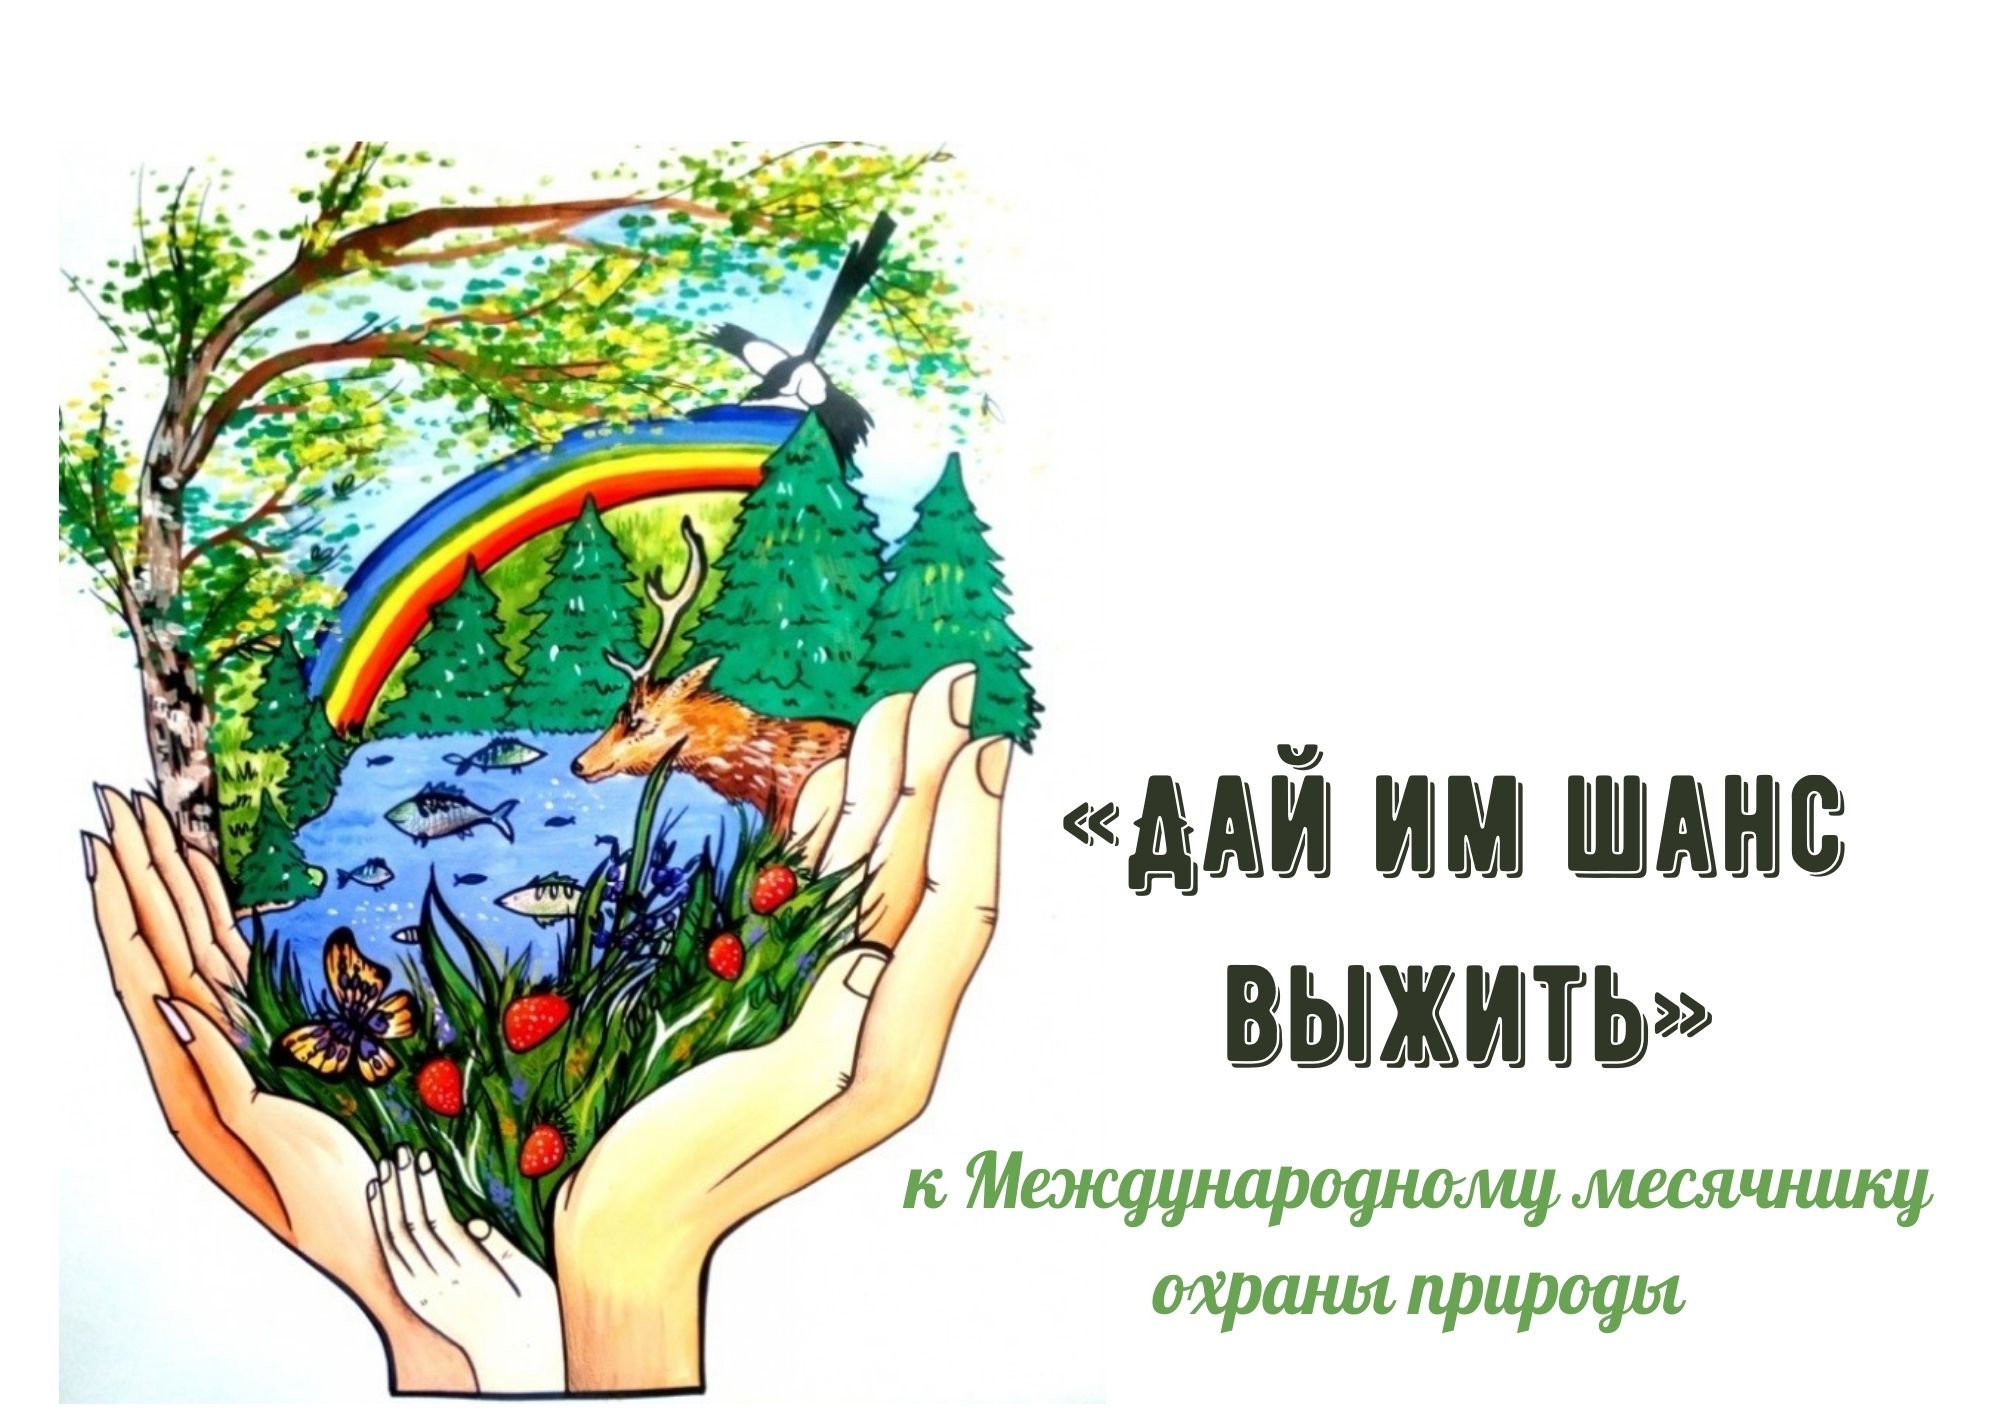 Сохранять природу статья. Защита и охрана природы. Экология и охрана природы. Плакат охрана природы. Защищайте природу.